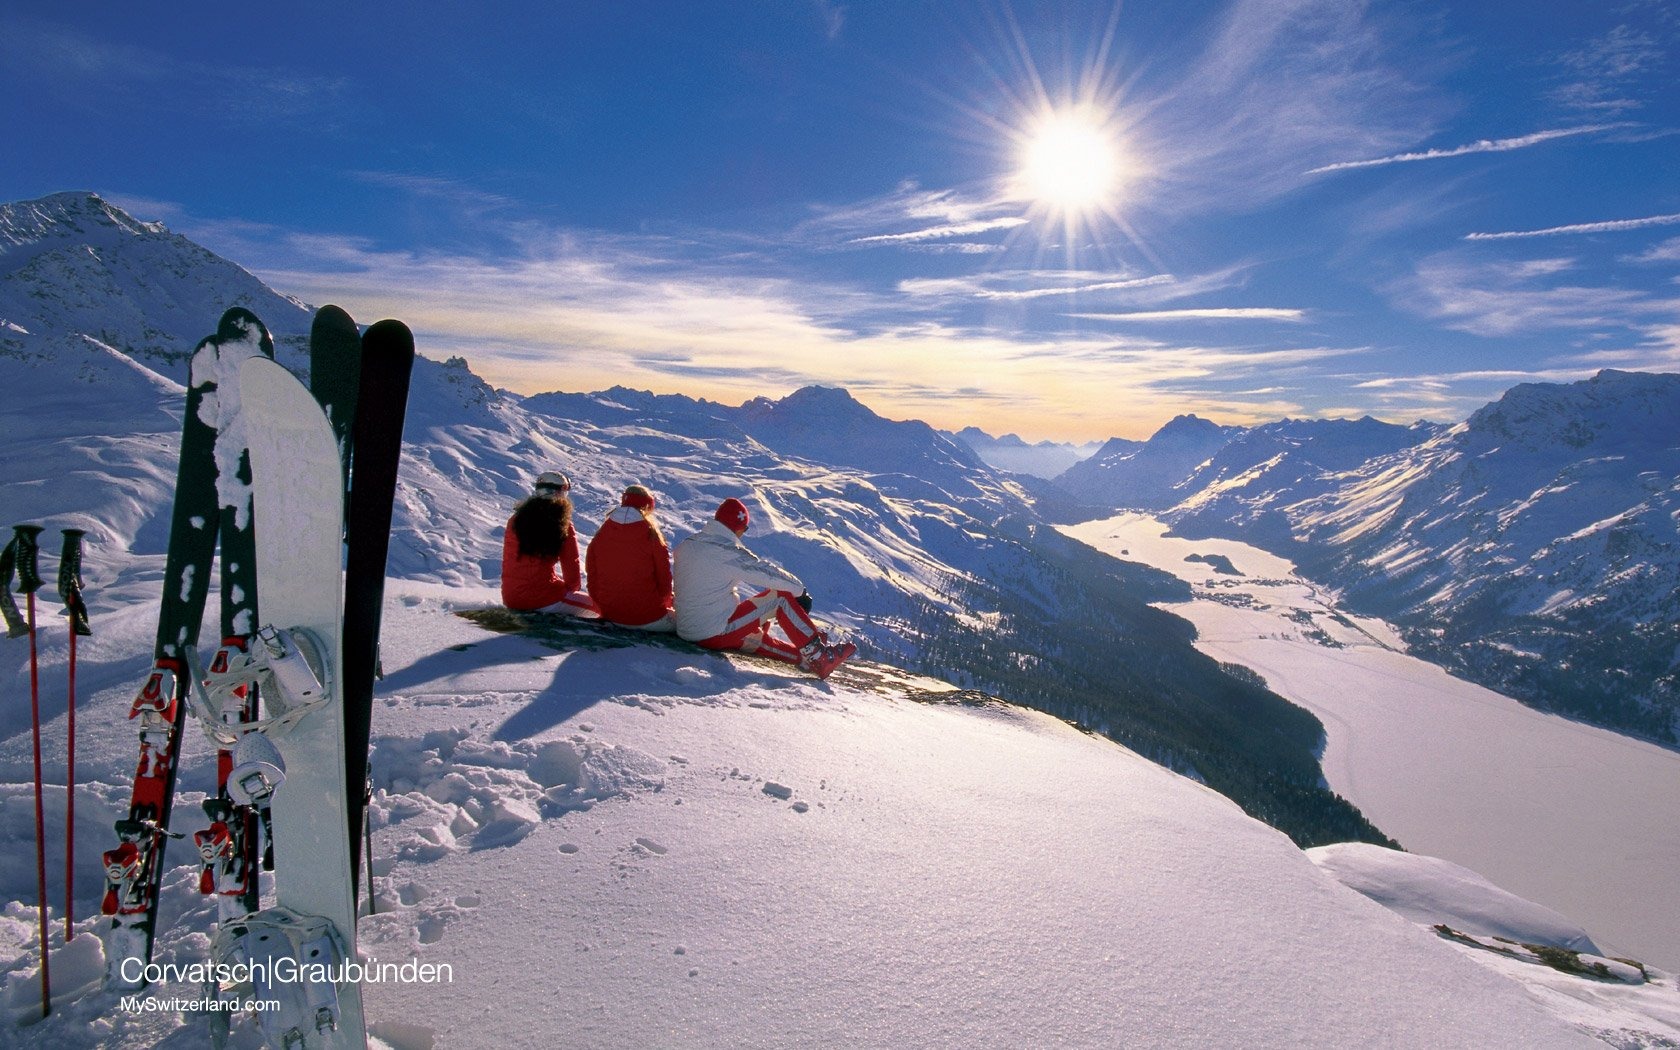 瑞士冬季旅游景点壁纸6 - 1680x1050